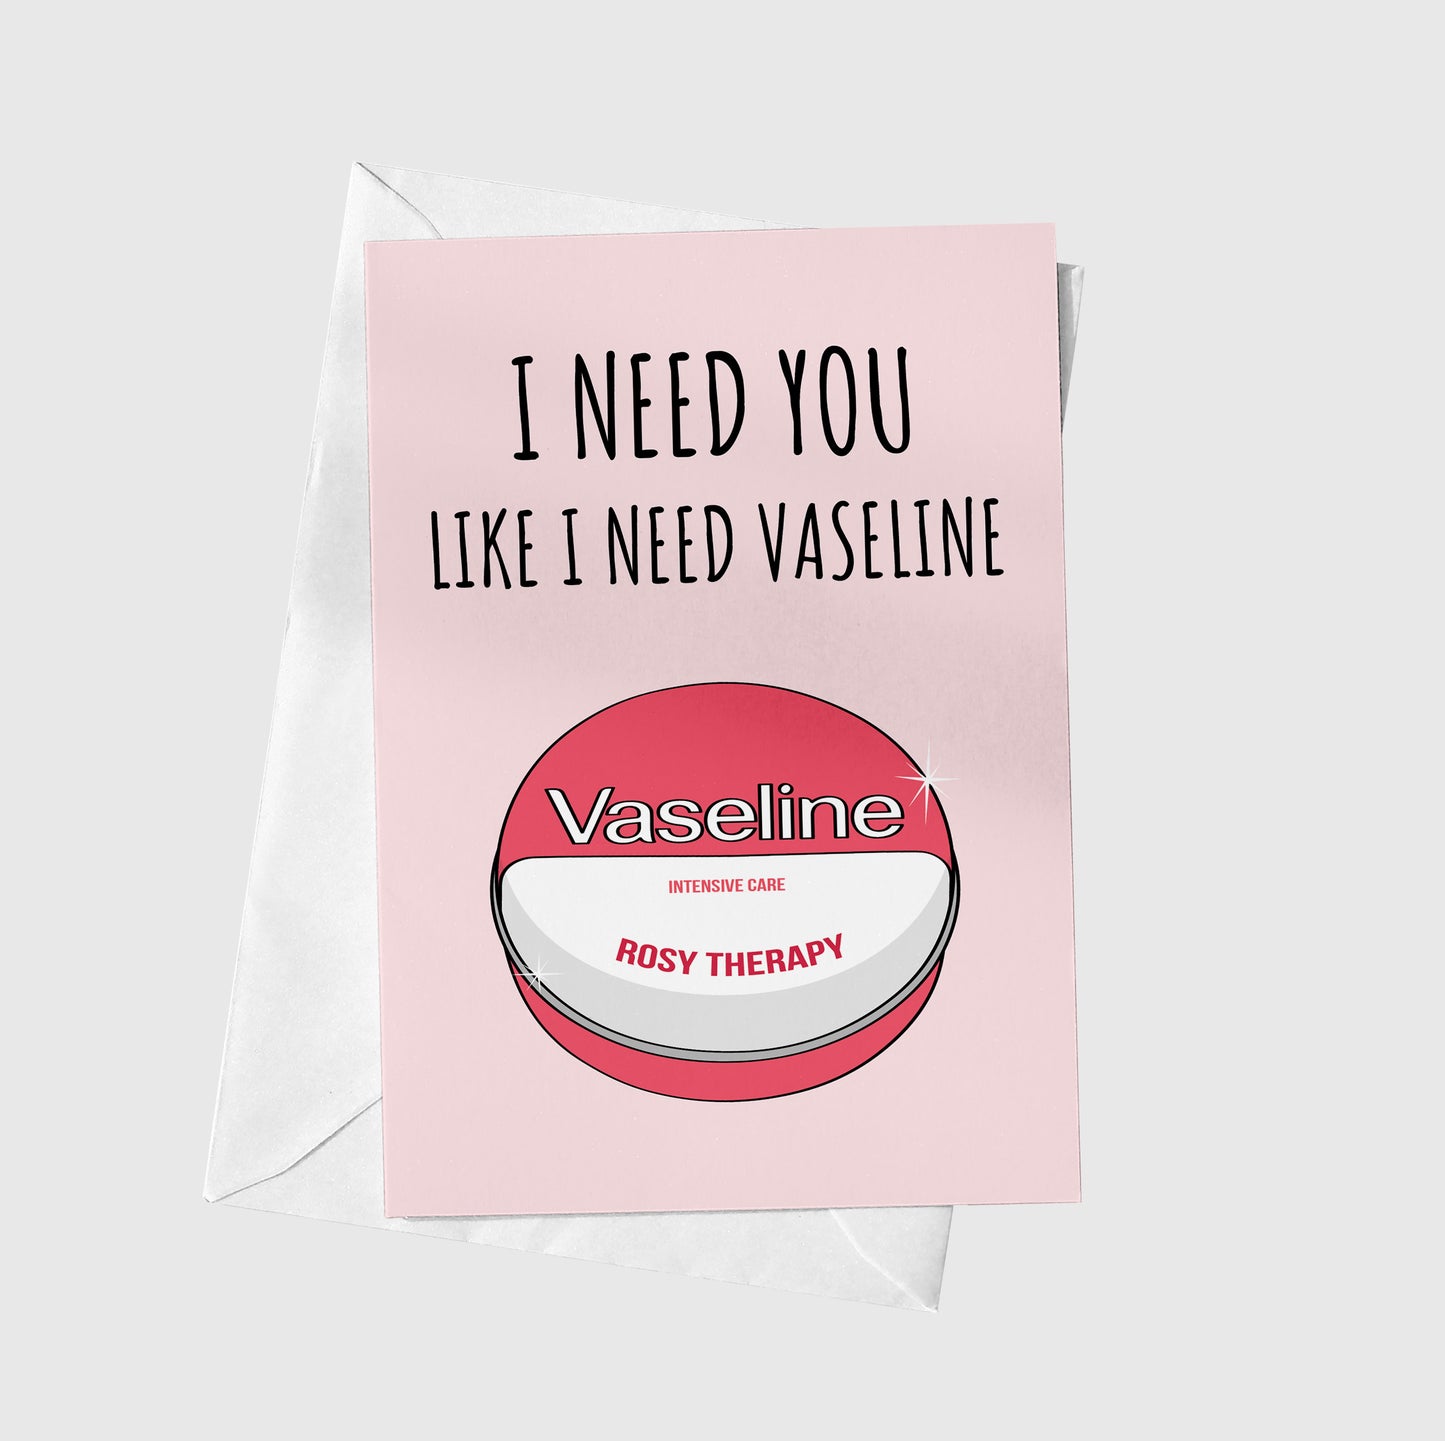 I need you like I need vaseline